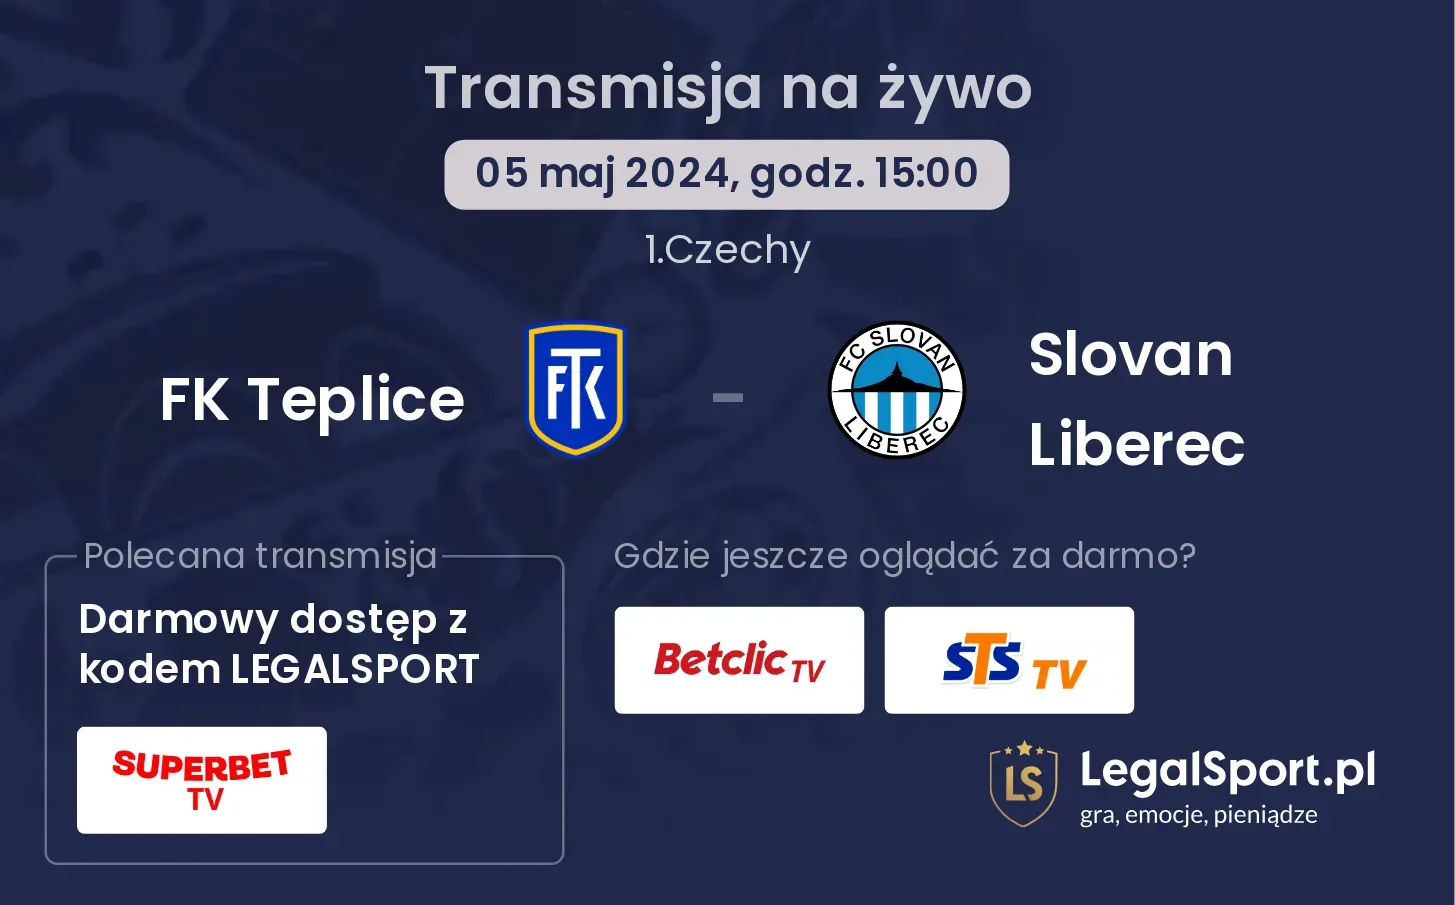 FK Teplice - Slovan Liberec transmisja na żywo